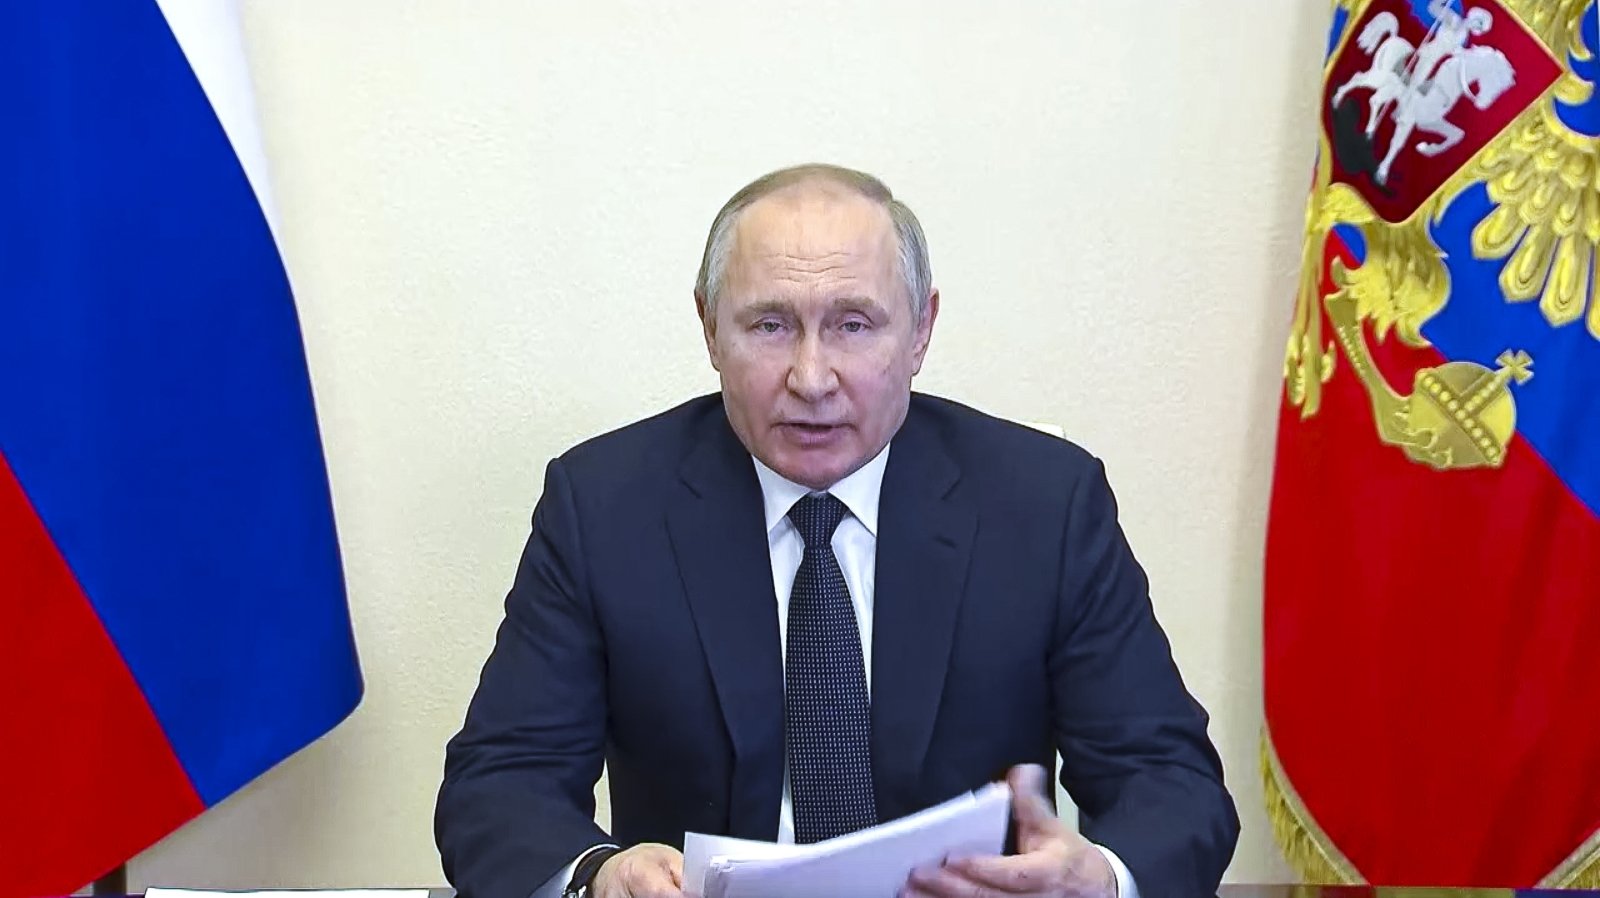 Ukrainos žvalgybos vadovas: buvo surengtas pasikėsinimas į Putino gyvybę